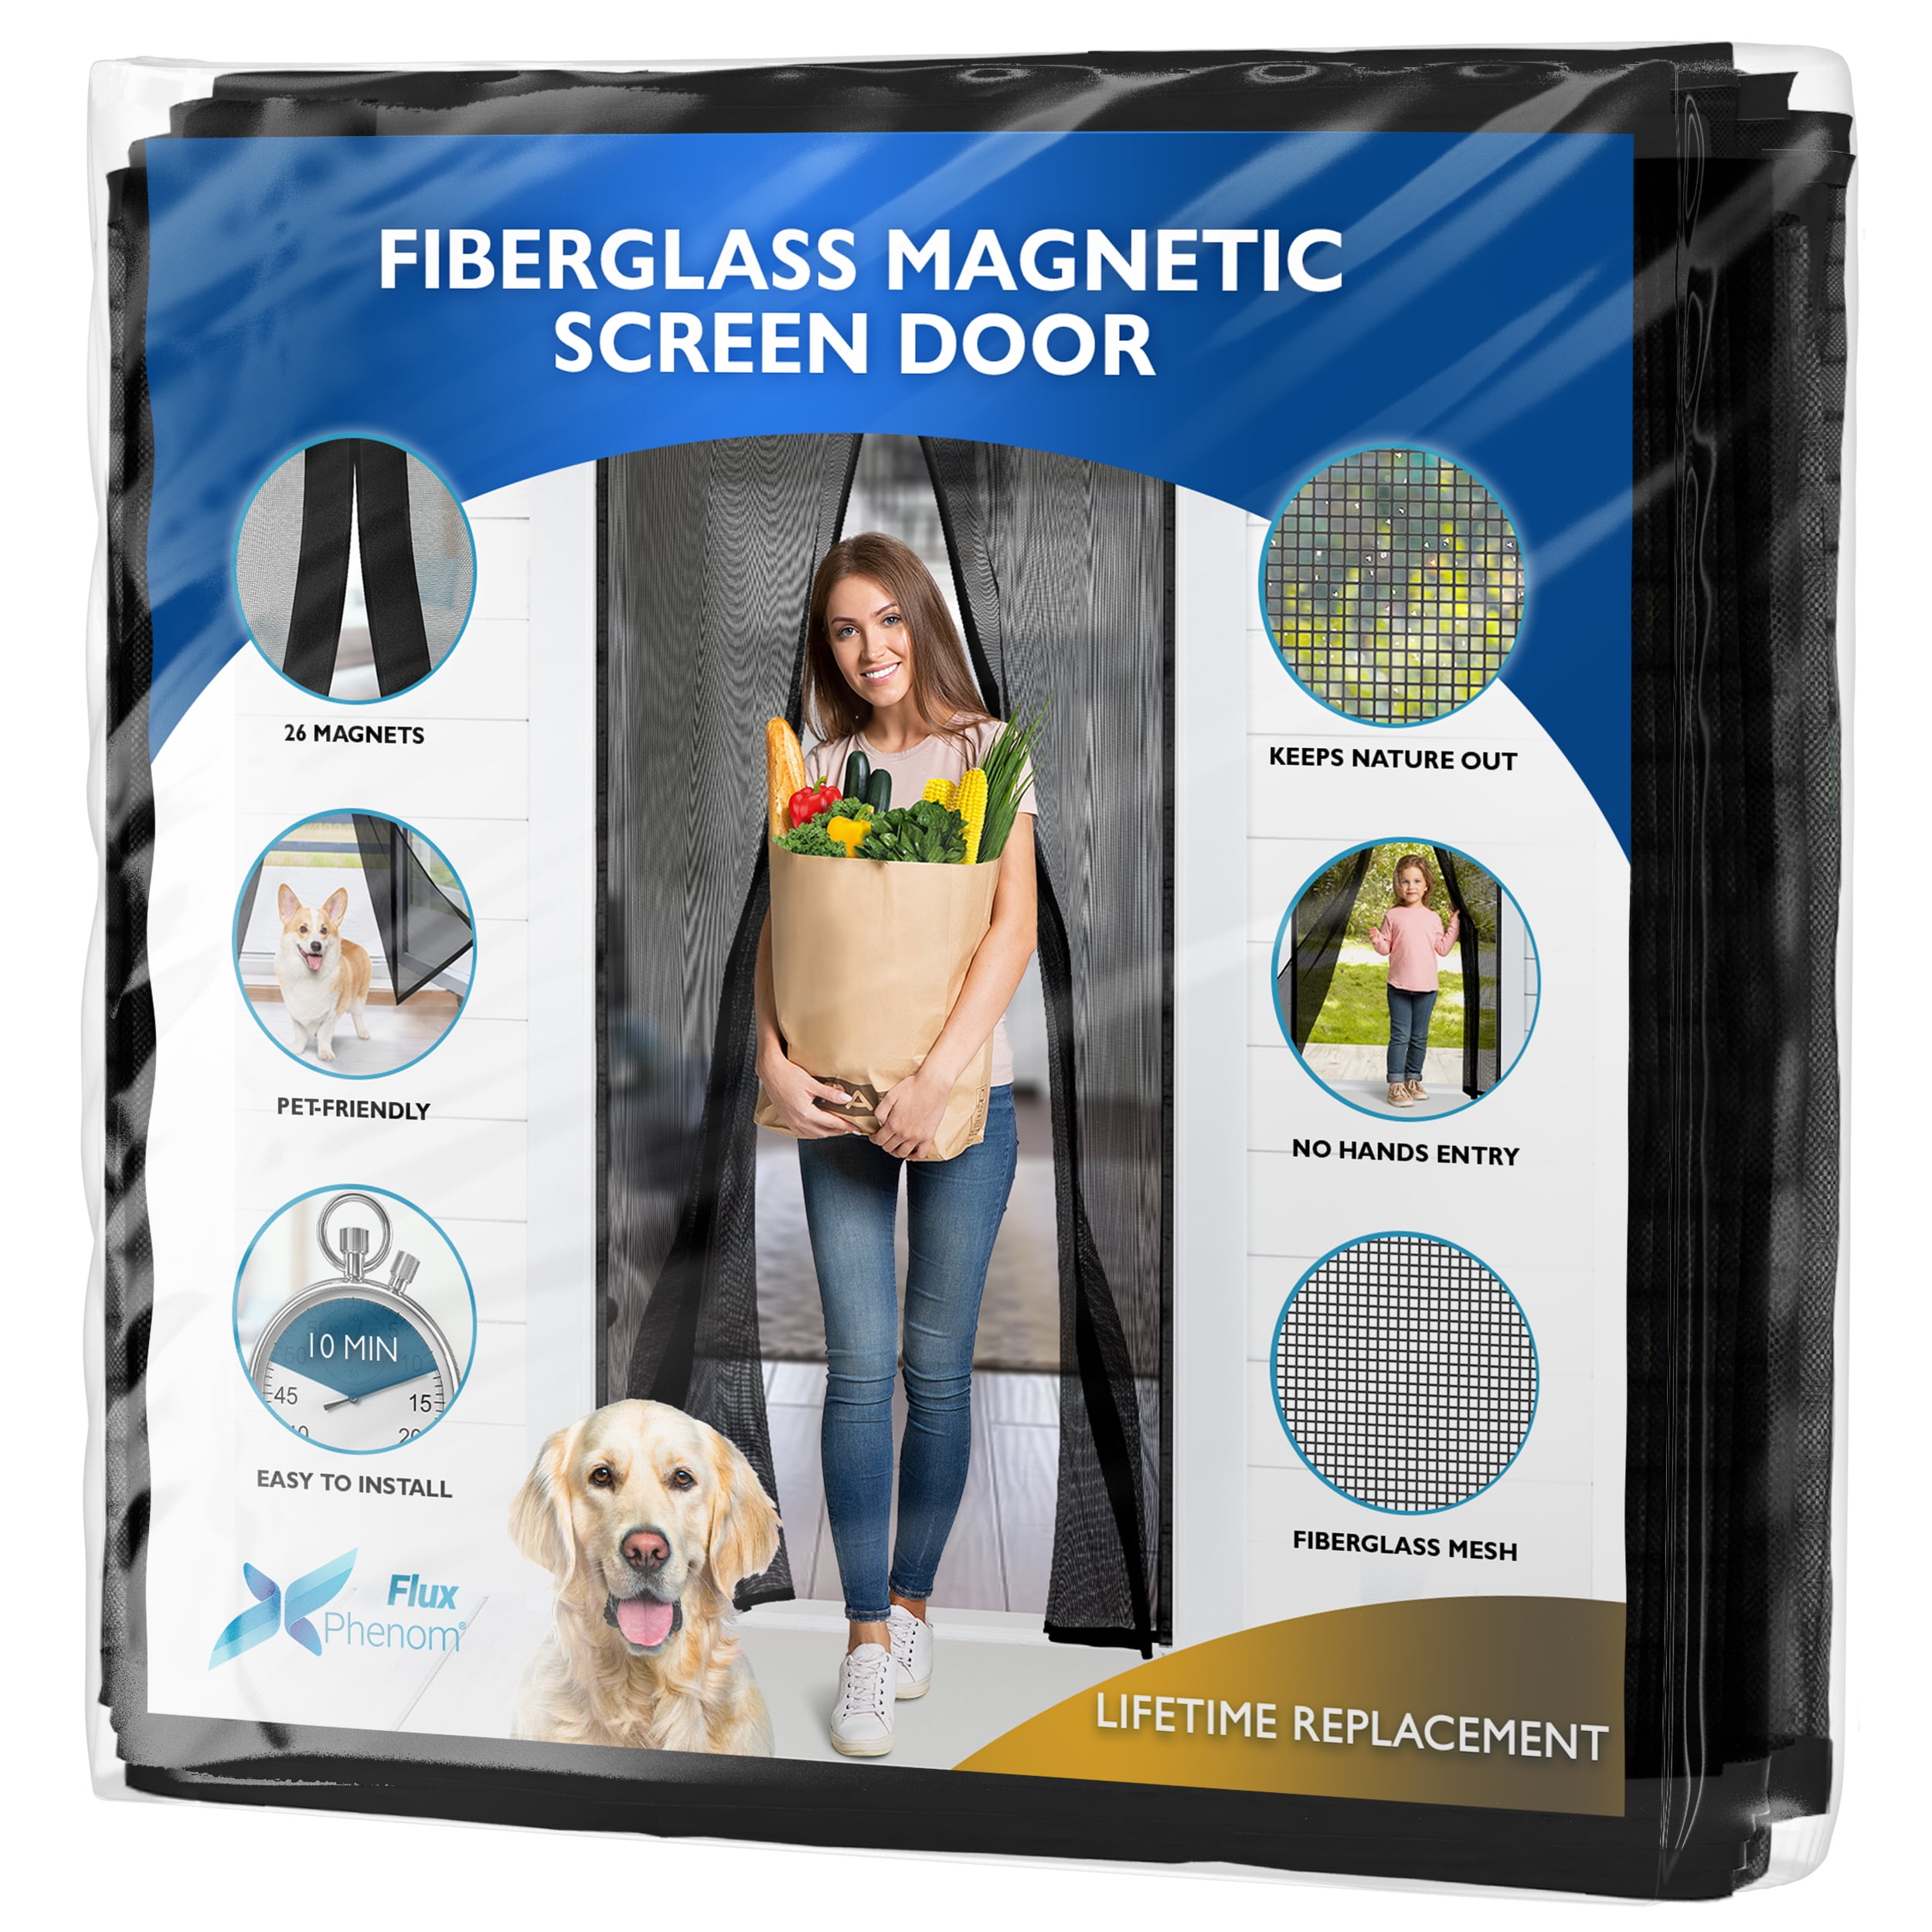 Flux Phenom (Upgraded Version) Fiberglass Magnetic Screen Door, Heavy Duty  Mesh Net for Patio and Sliding Doorways